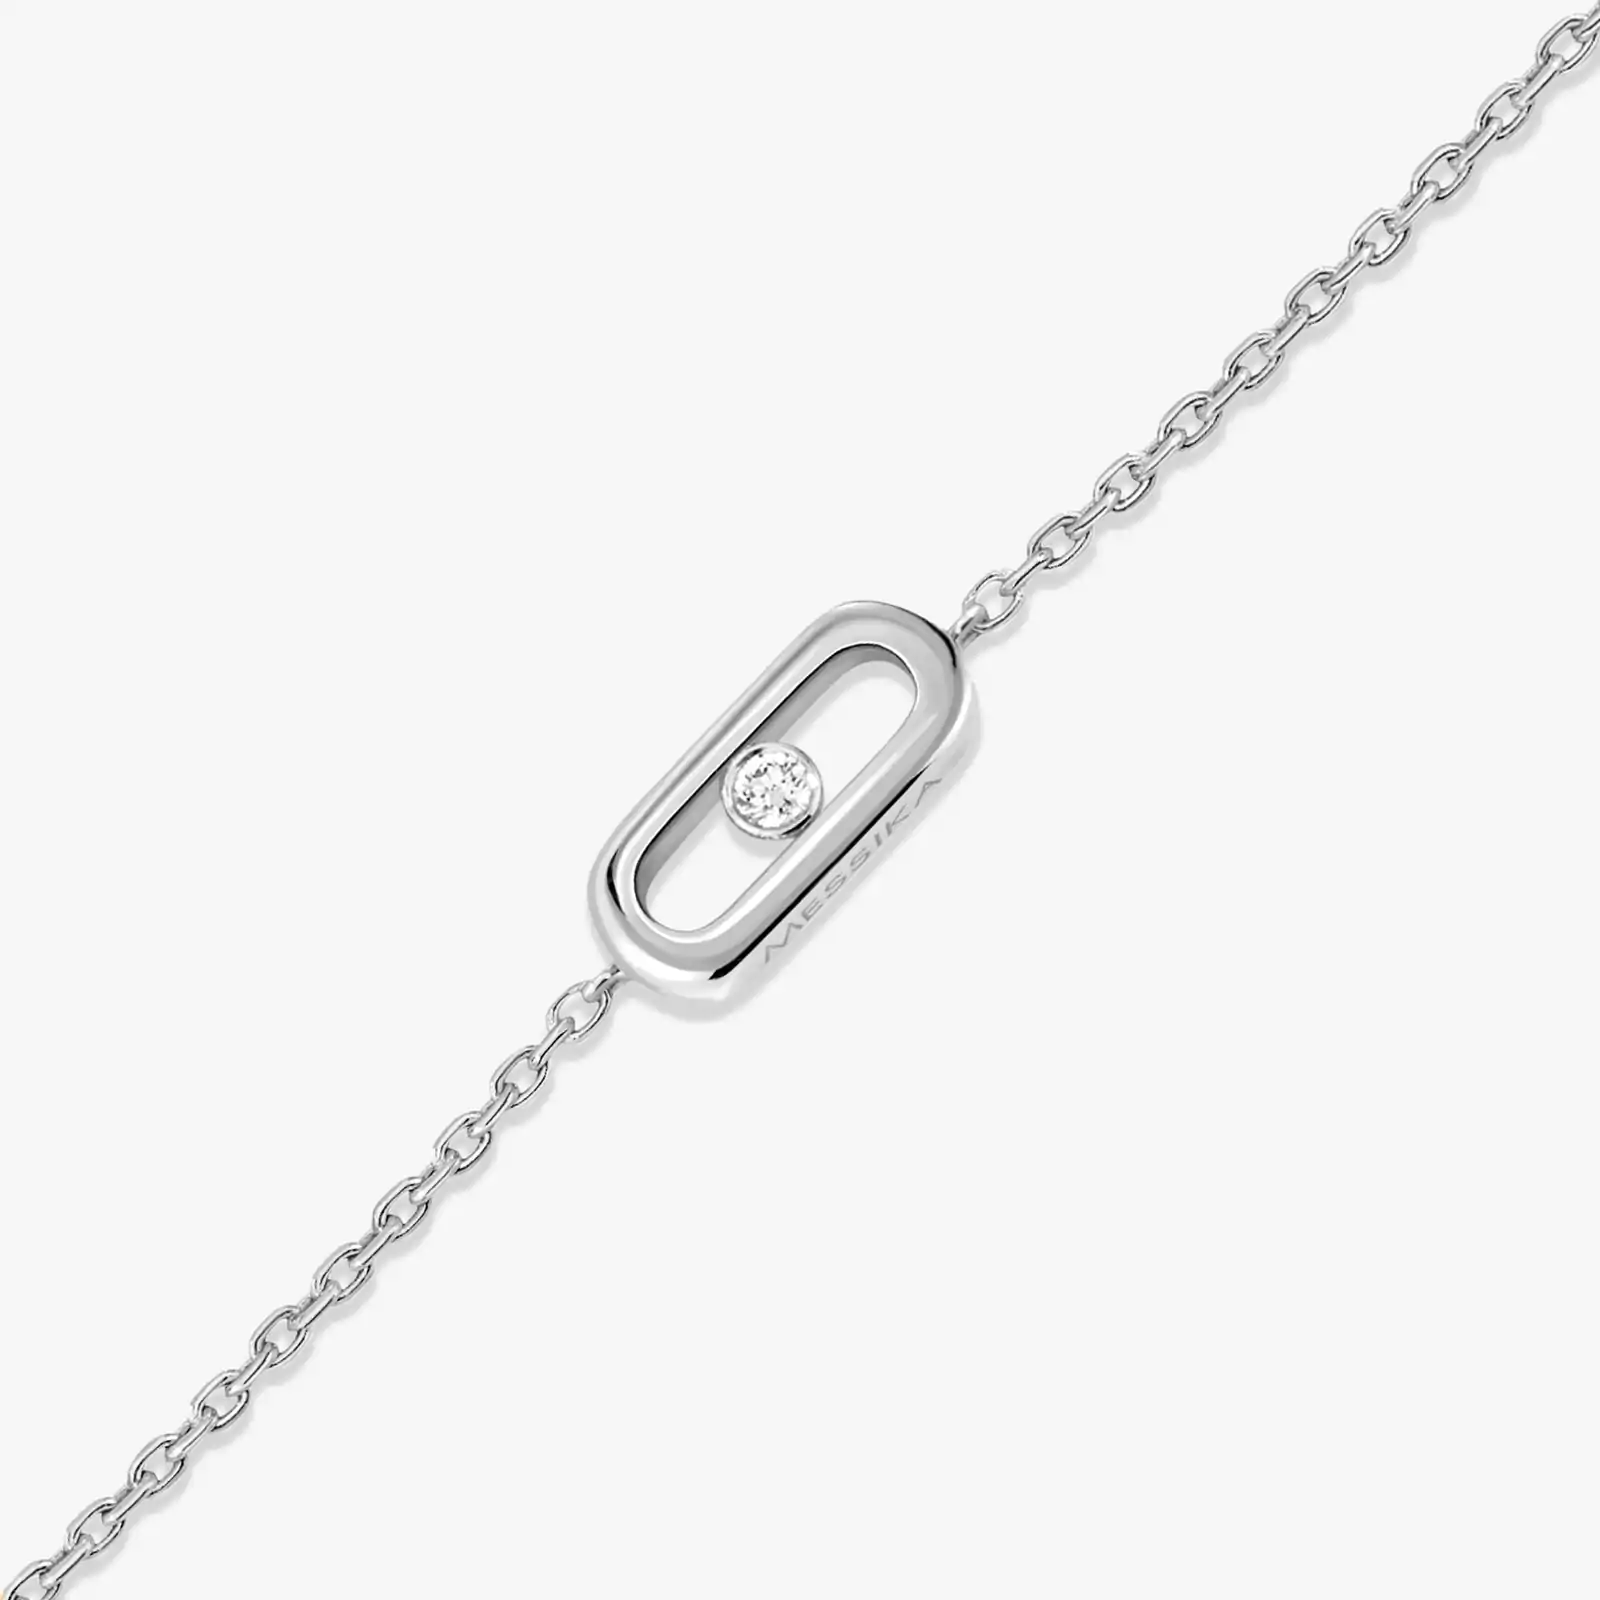 Bracelet For Her White Gold Diamond Messika CARE(S) Children's Bracelet 12500-WG